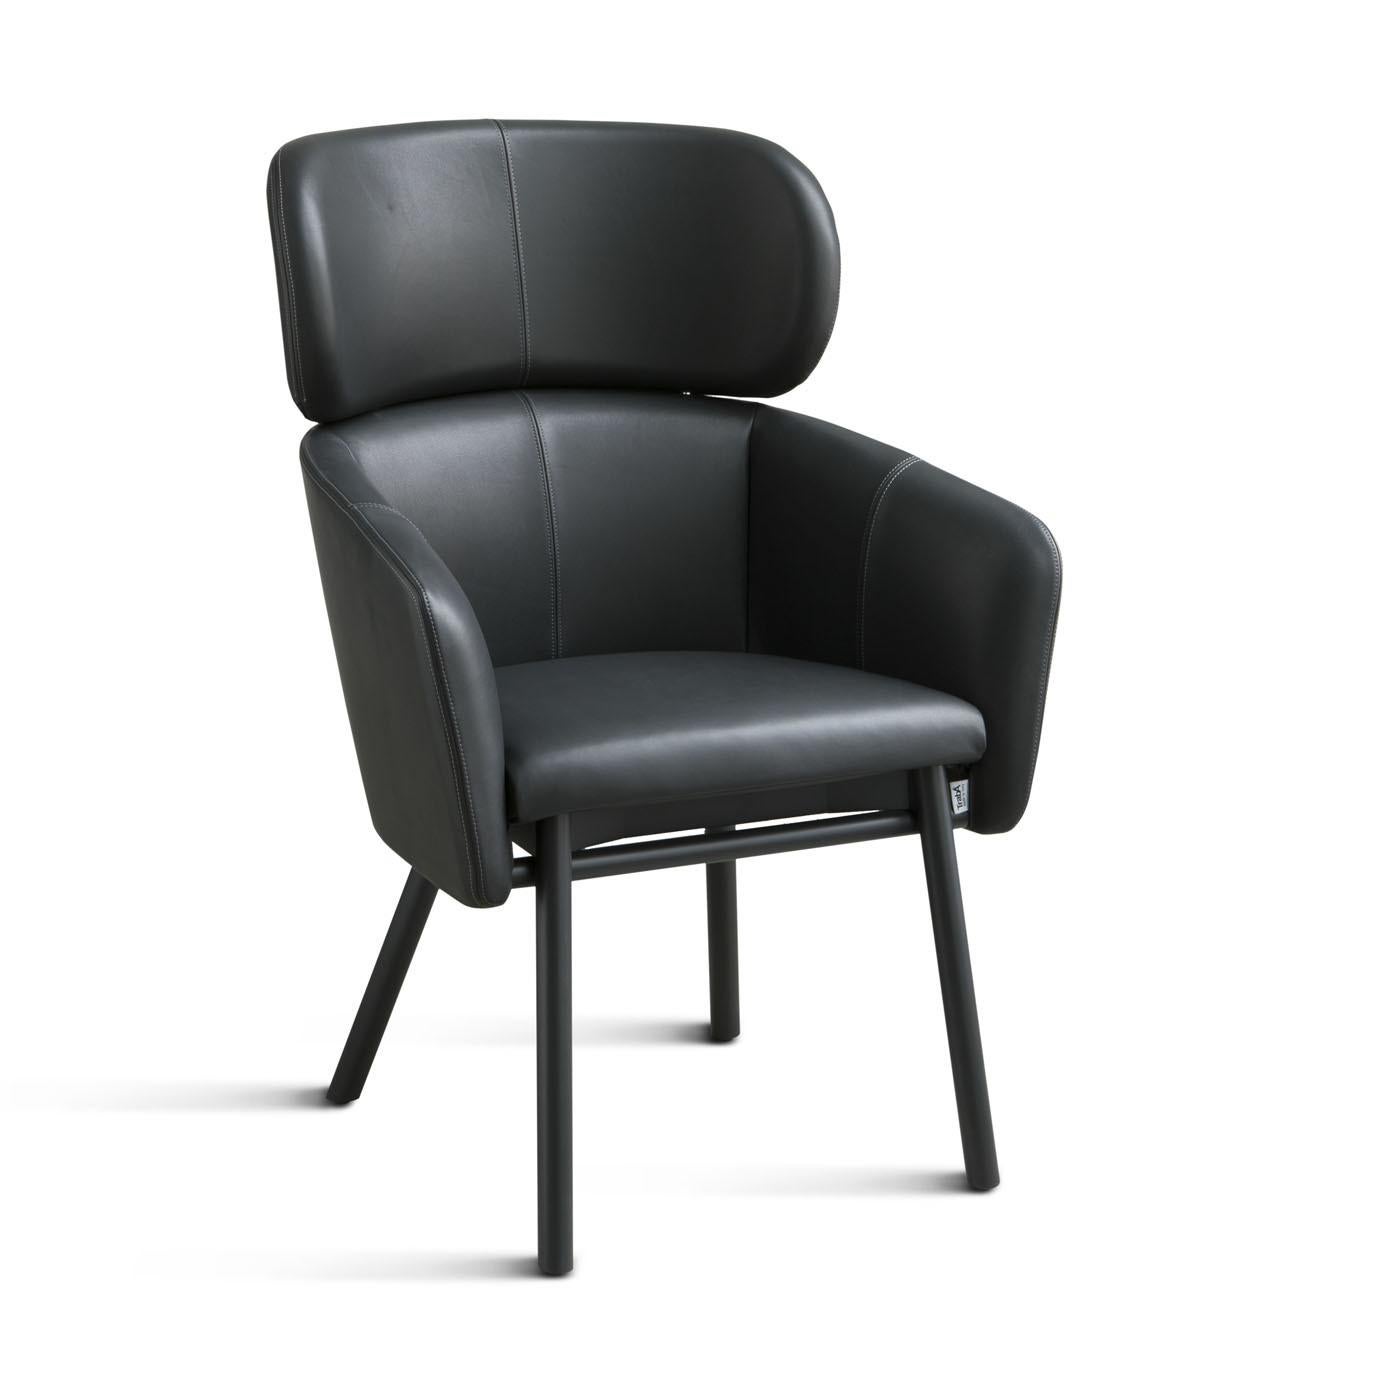 Dieser Stuhl ist eine modulare und größere Version des raffinierten Stuhls Balù von Emilio Nanni, der sich durch Minimalismus und klares Design auszeichnet. Der bequeme und elegante Sessel besteht aus schwarz lackiertem Buchenholz mit abgeschrägten